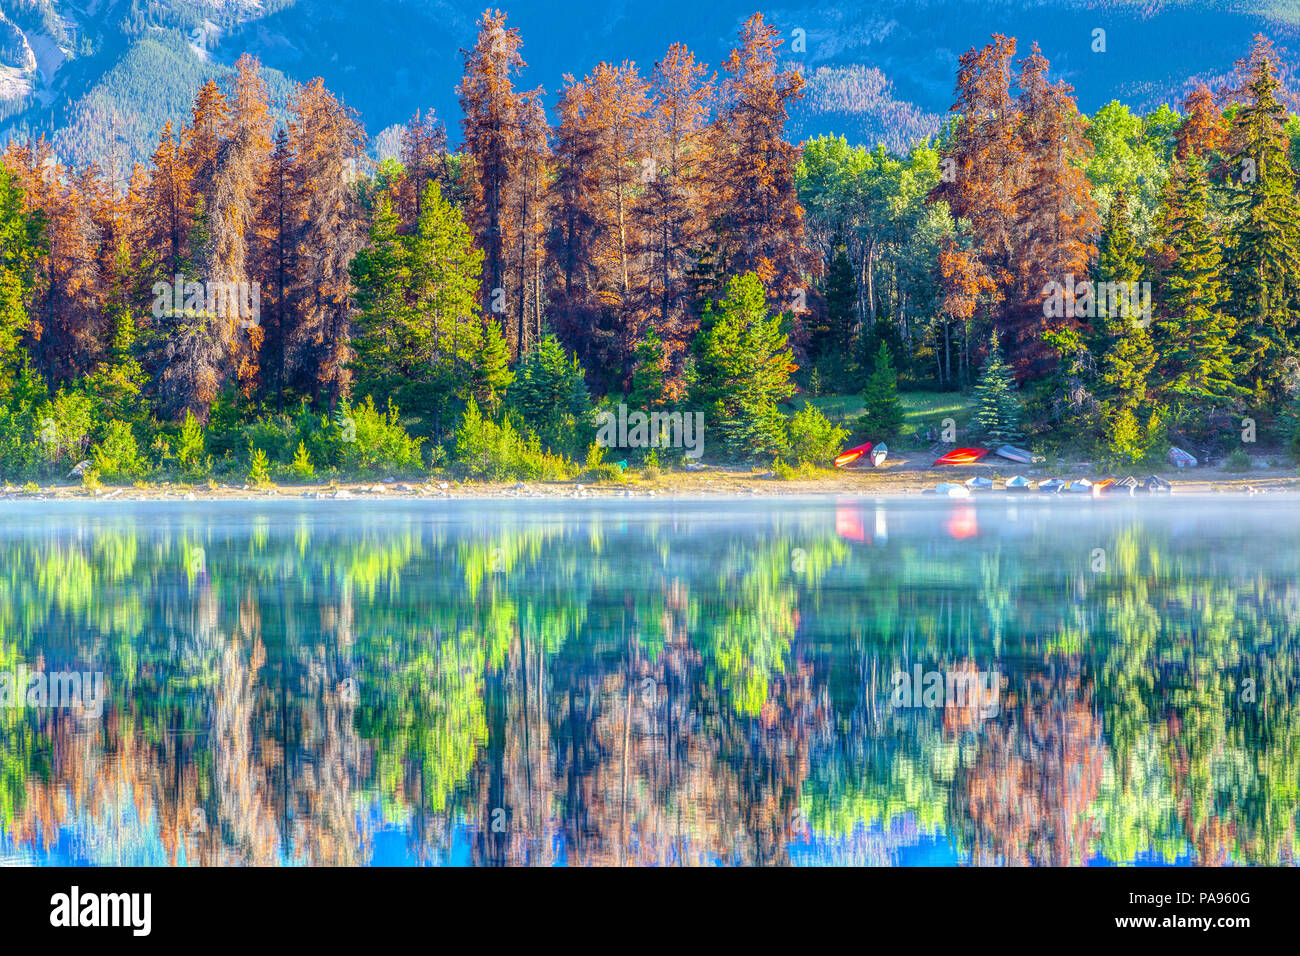 Alberi colorati rivestiti sulle rive del lago di Patricia al Parco Nazionale di Jasper, Canada. Le calme acque riflettono gli alberi e un paio di canoe sull'acqua ed Foto Stock